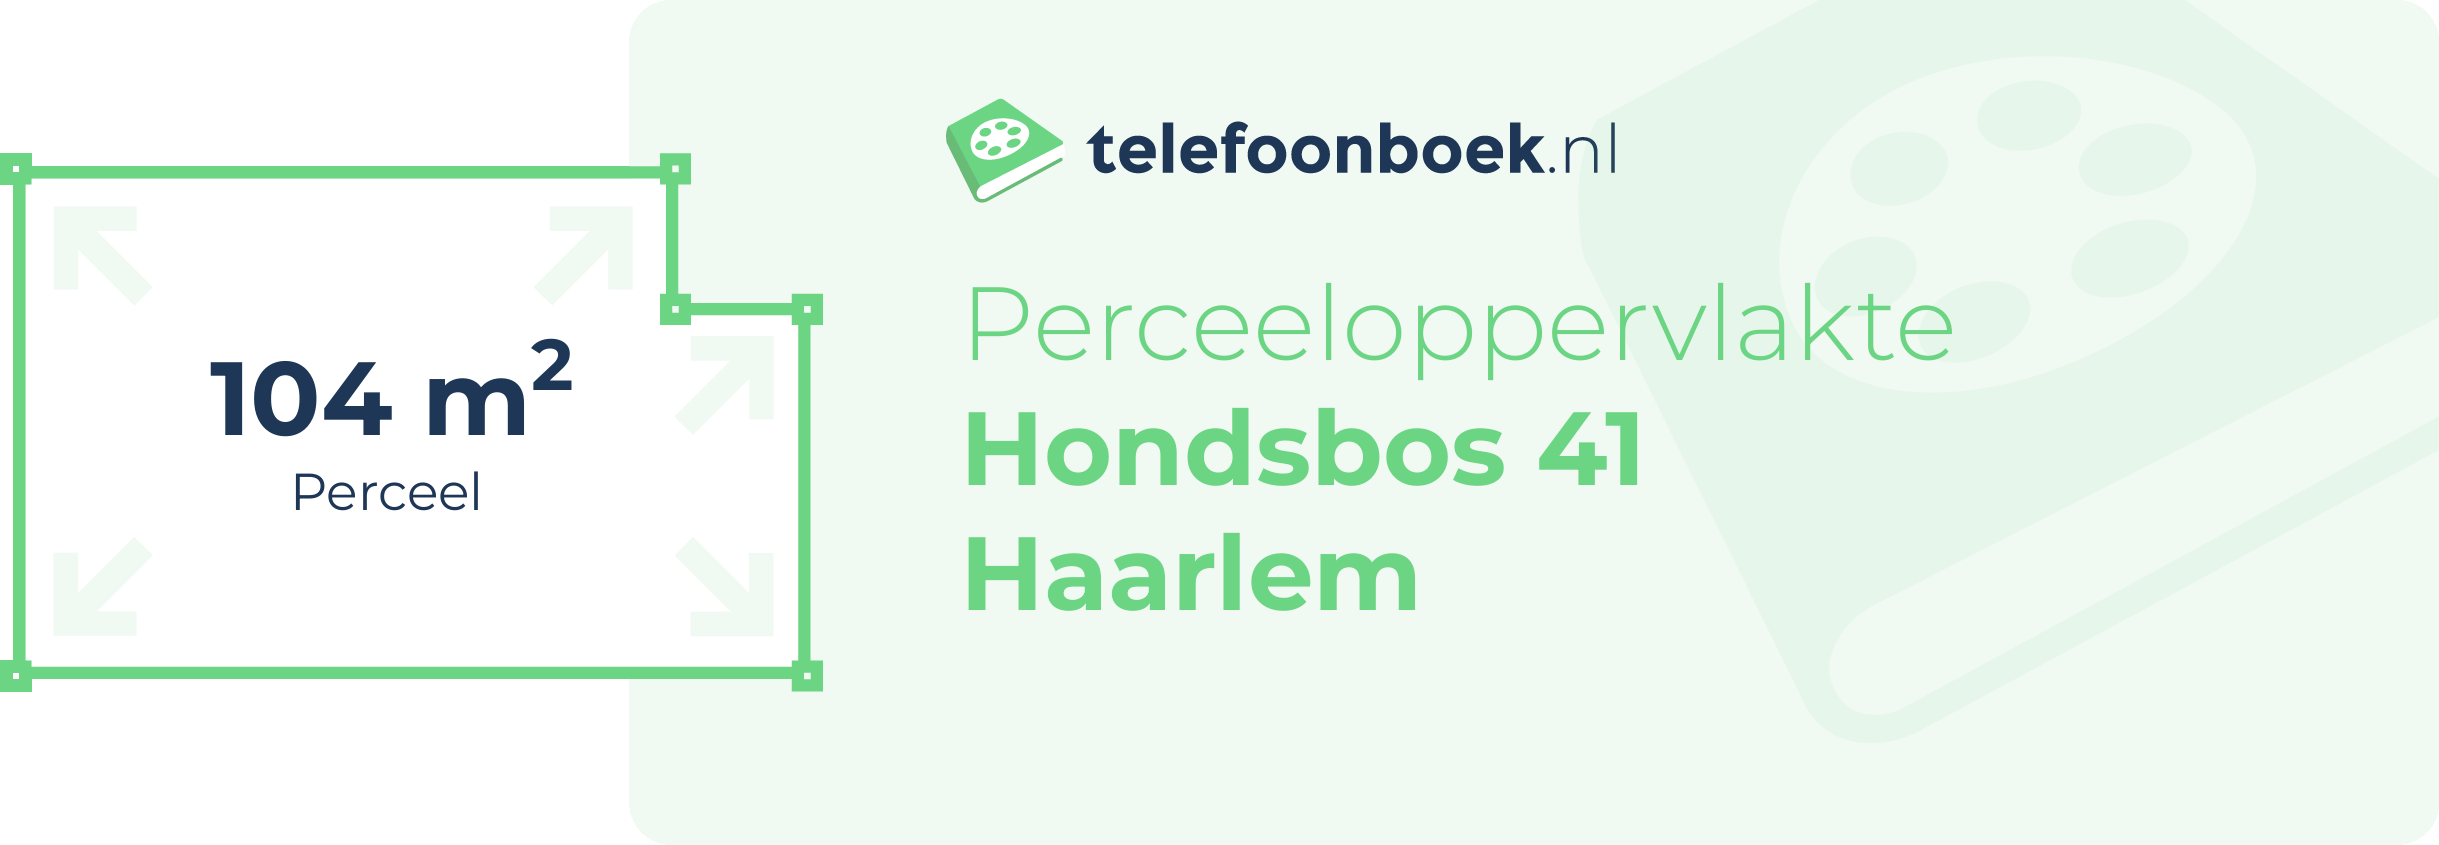 Perceeloppervlakte Hondsbos 41 Haarlem